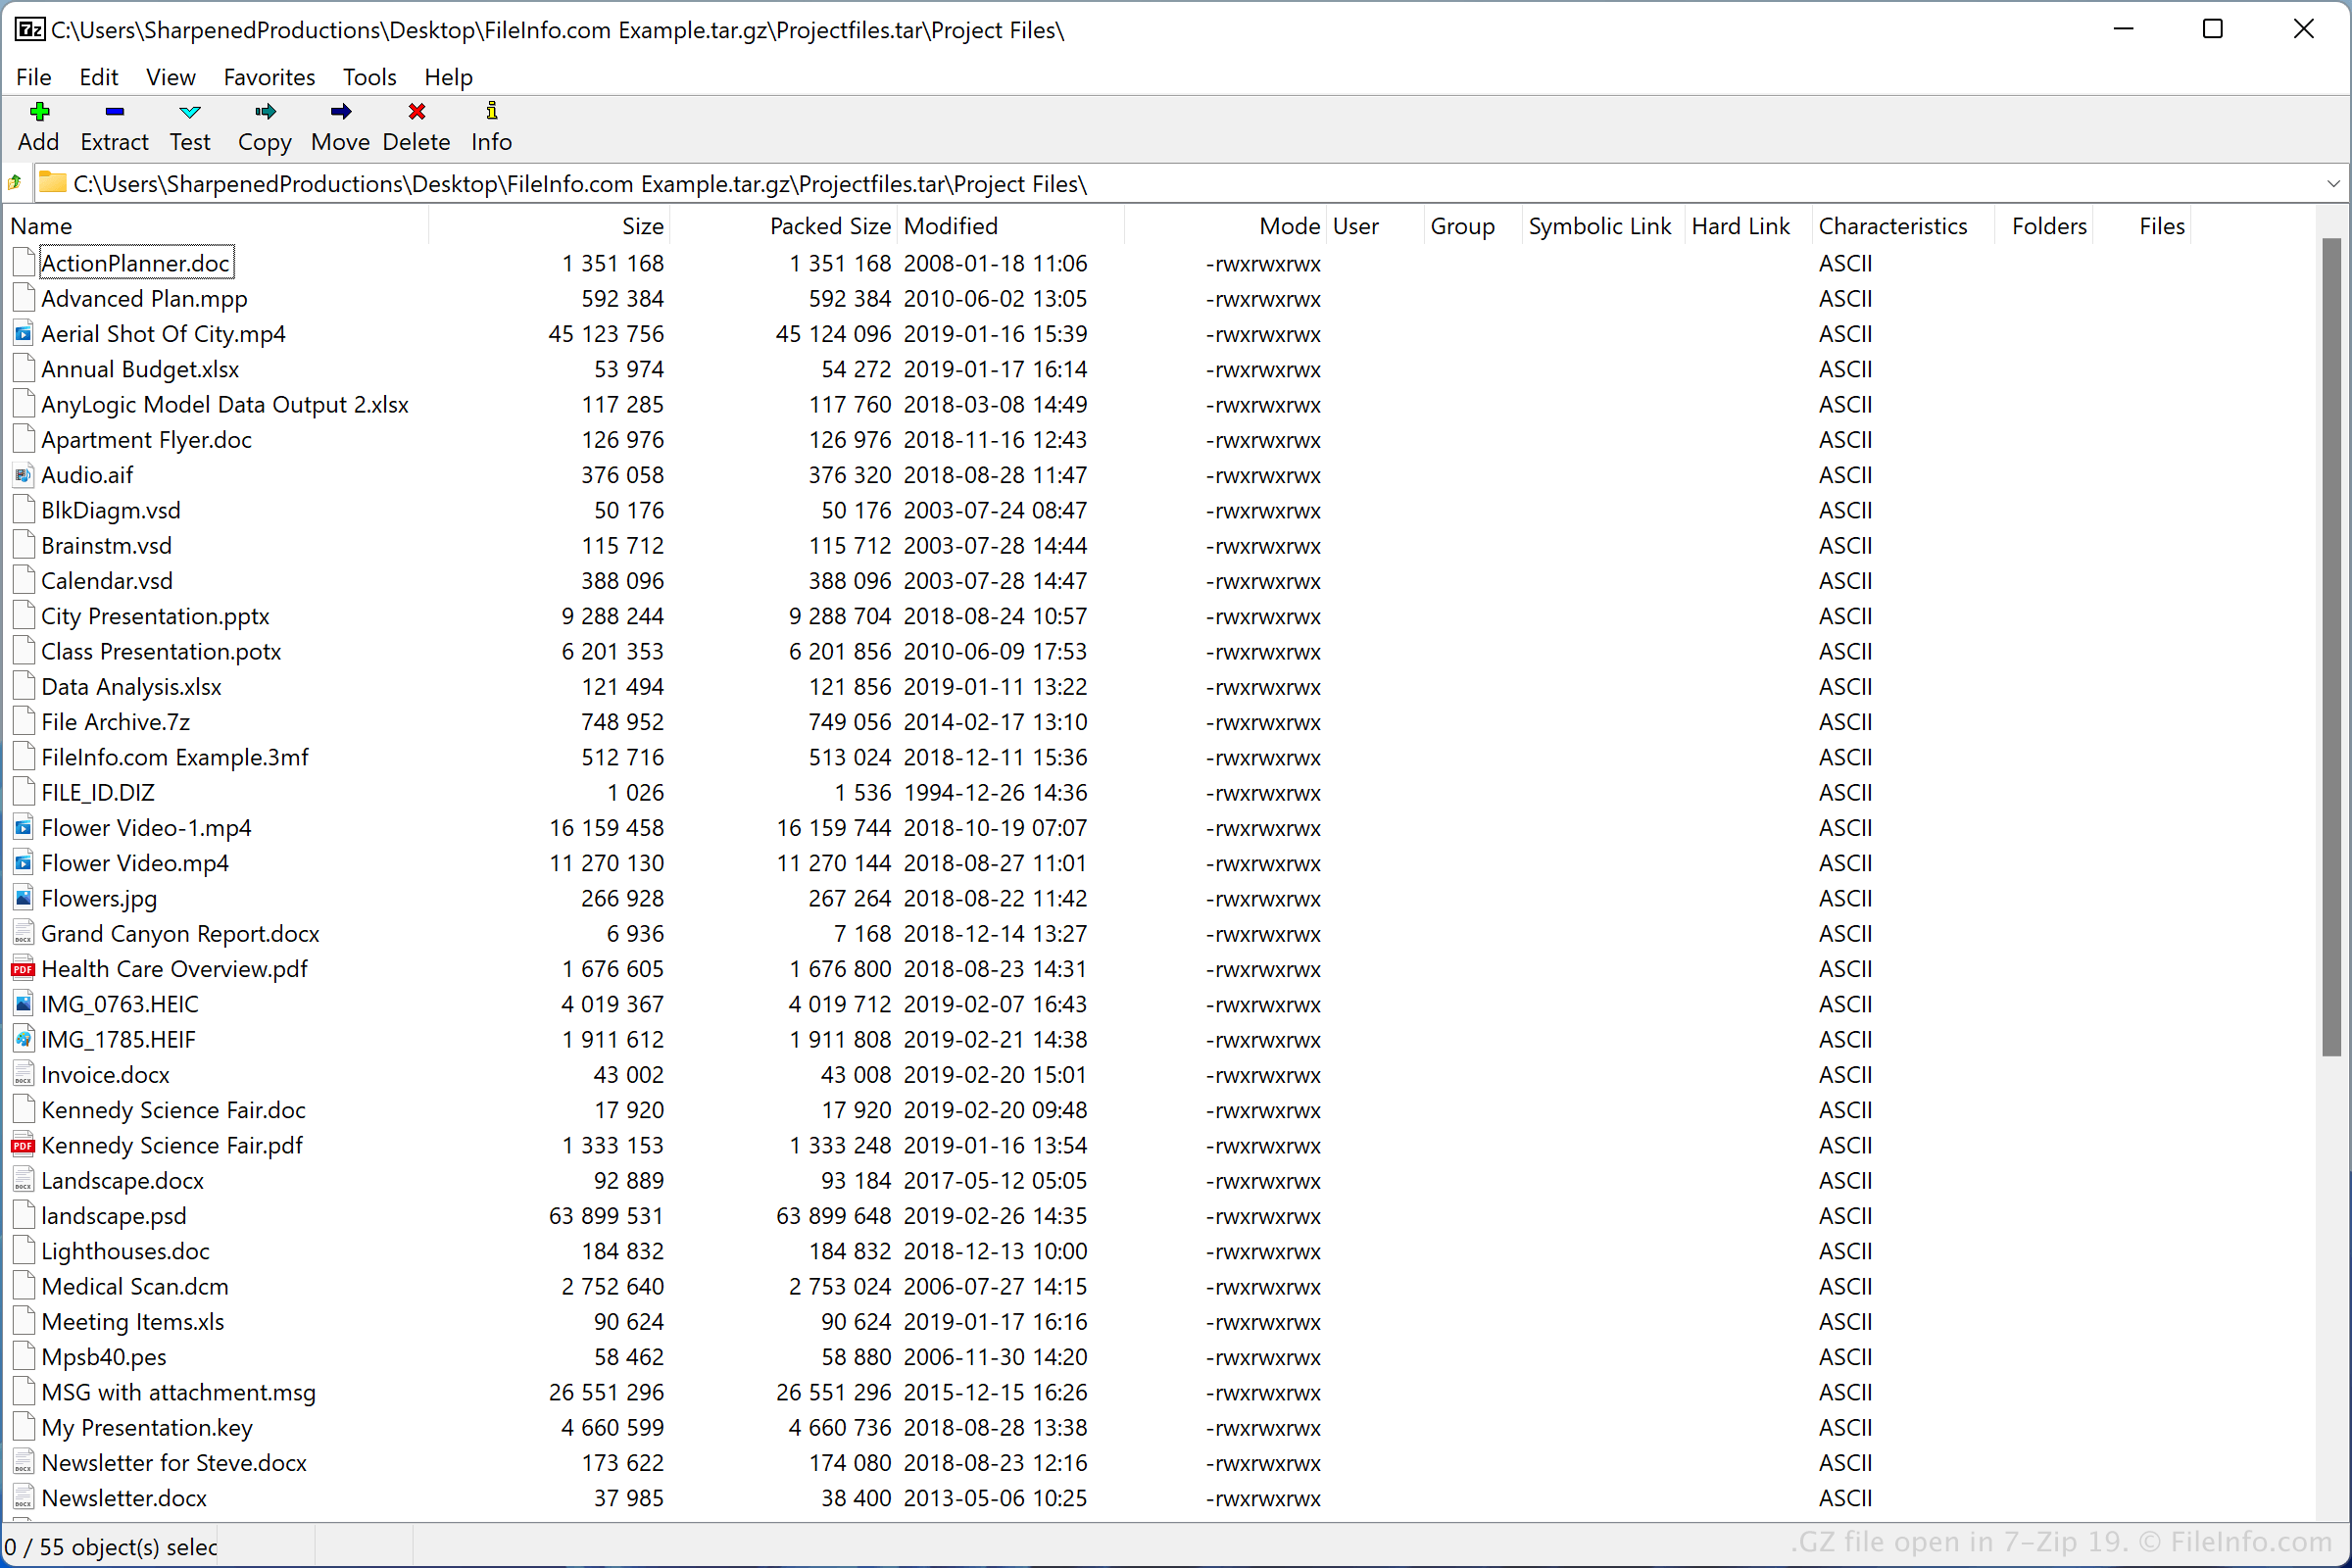 GZ File - What is a .gz file and how do I open it?